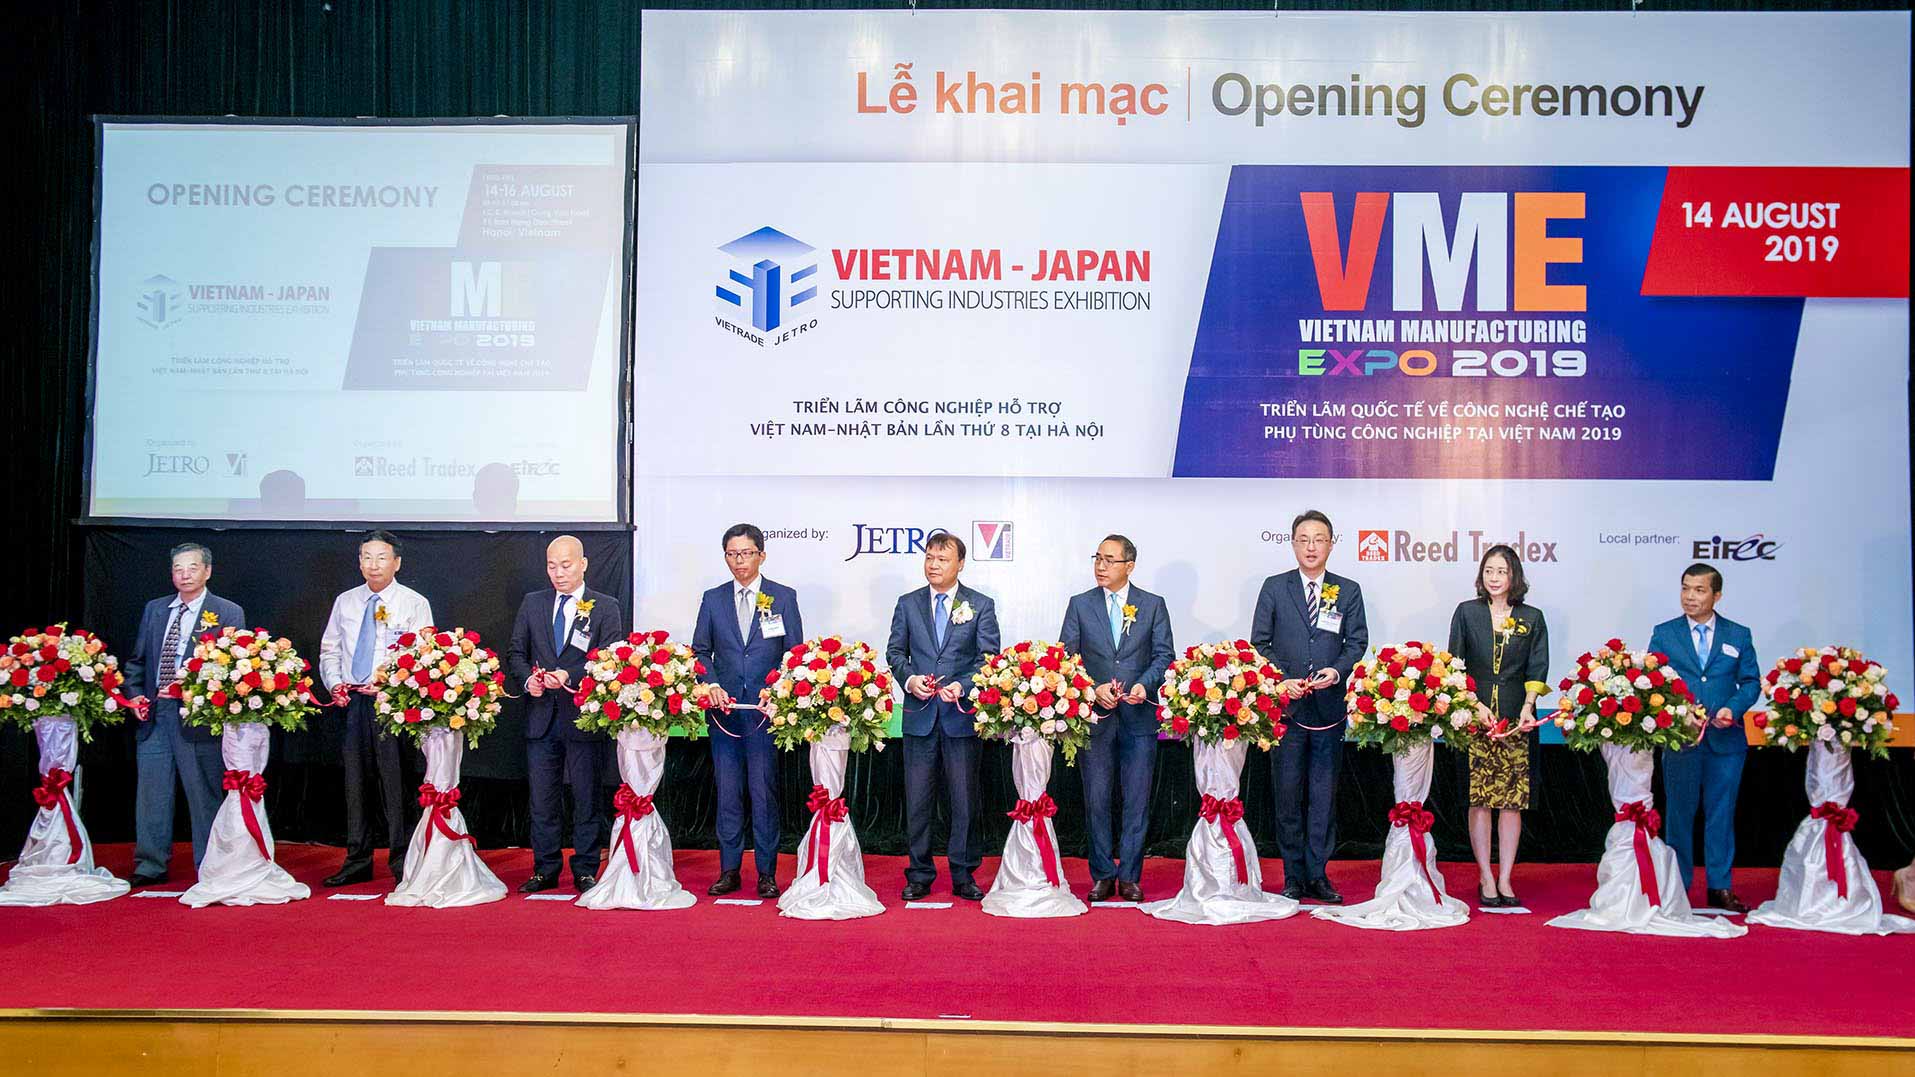 Lễ khai mạc chính thức của hai triển lãm quốc tế đồng địa điểm là “Triển lãm Quốc tế lần thứ 11 về Công nghệ chế tạo phụ tùng công nghiệp tại Việt Nam (Vietnam Manufacturing Expo - VME 2019)” và “Triển lãm Công nghiệp hỗ trợ Việt Nam - Nhật Bản lần thứ 8 (SIE 2019)”